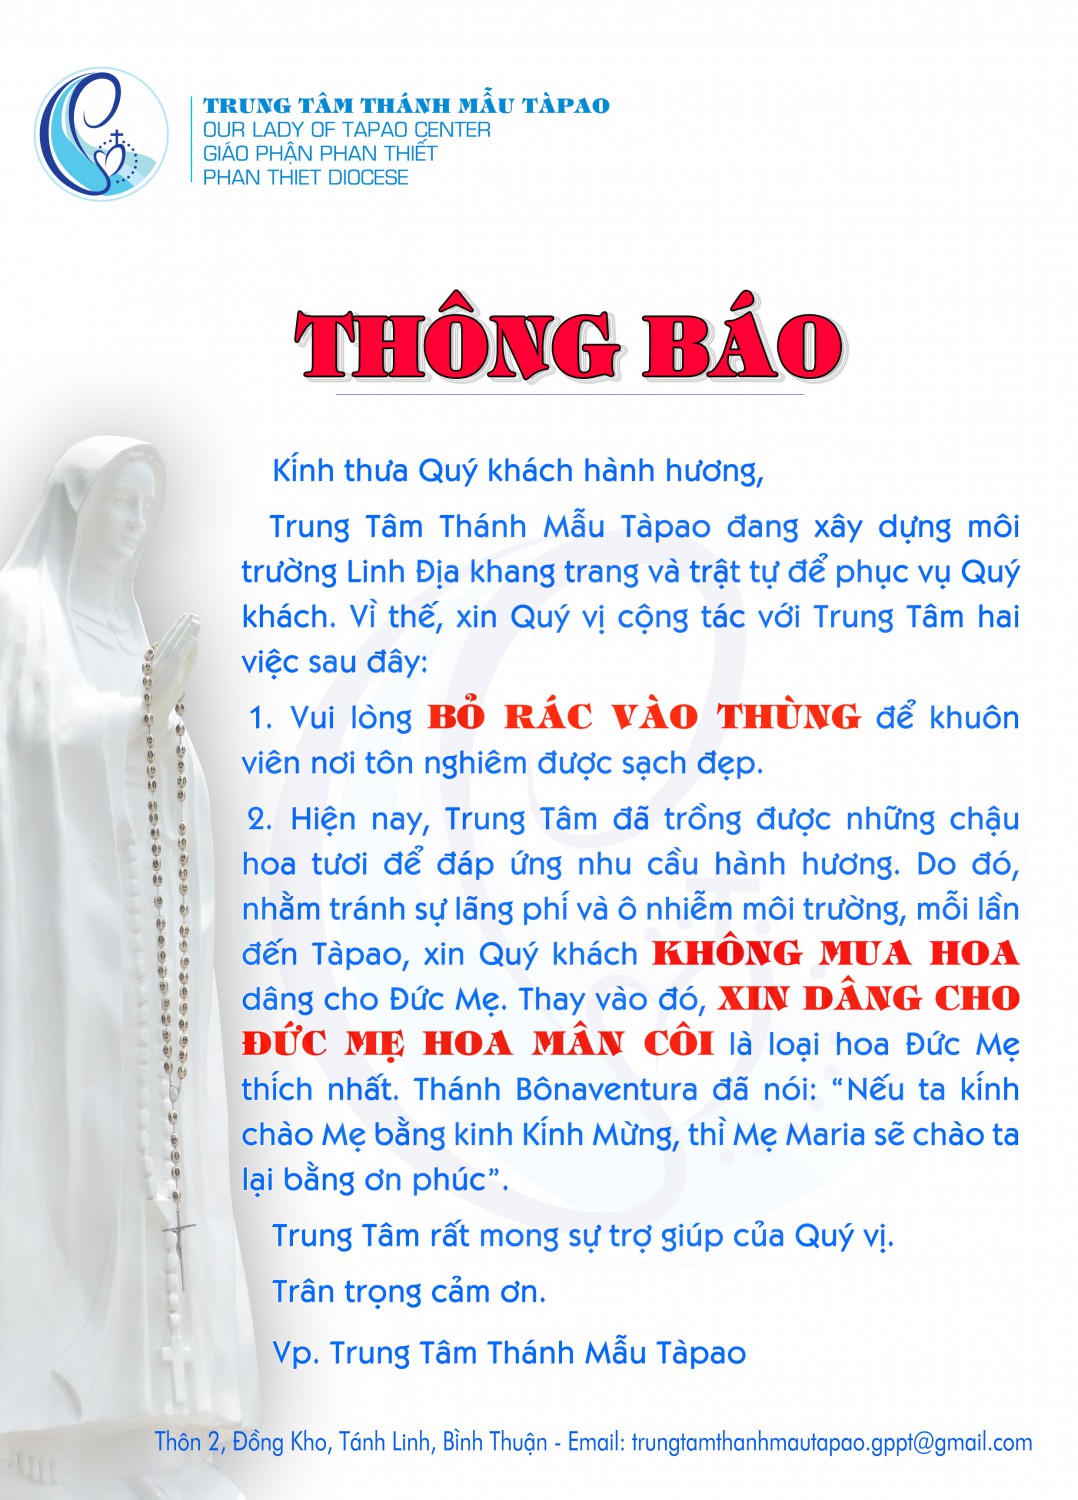 THONG BAO KHONG MUA HOA